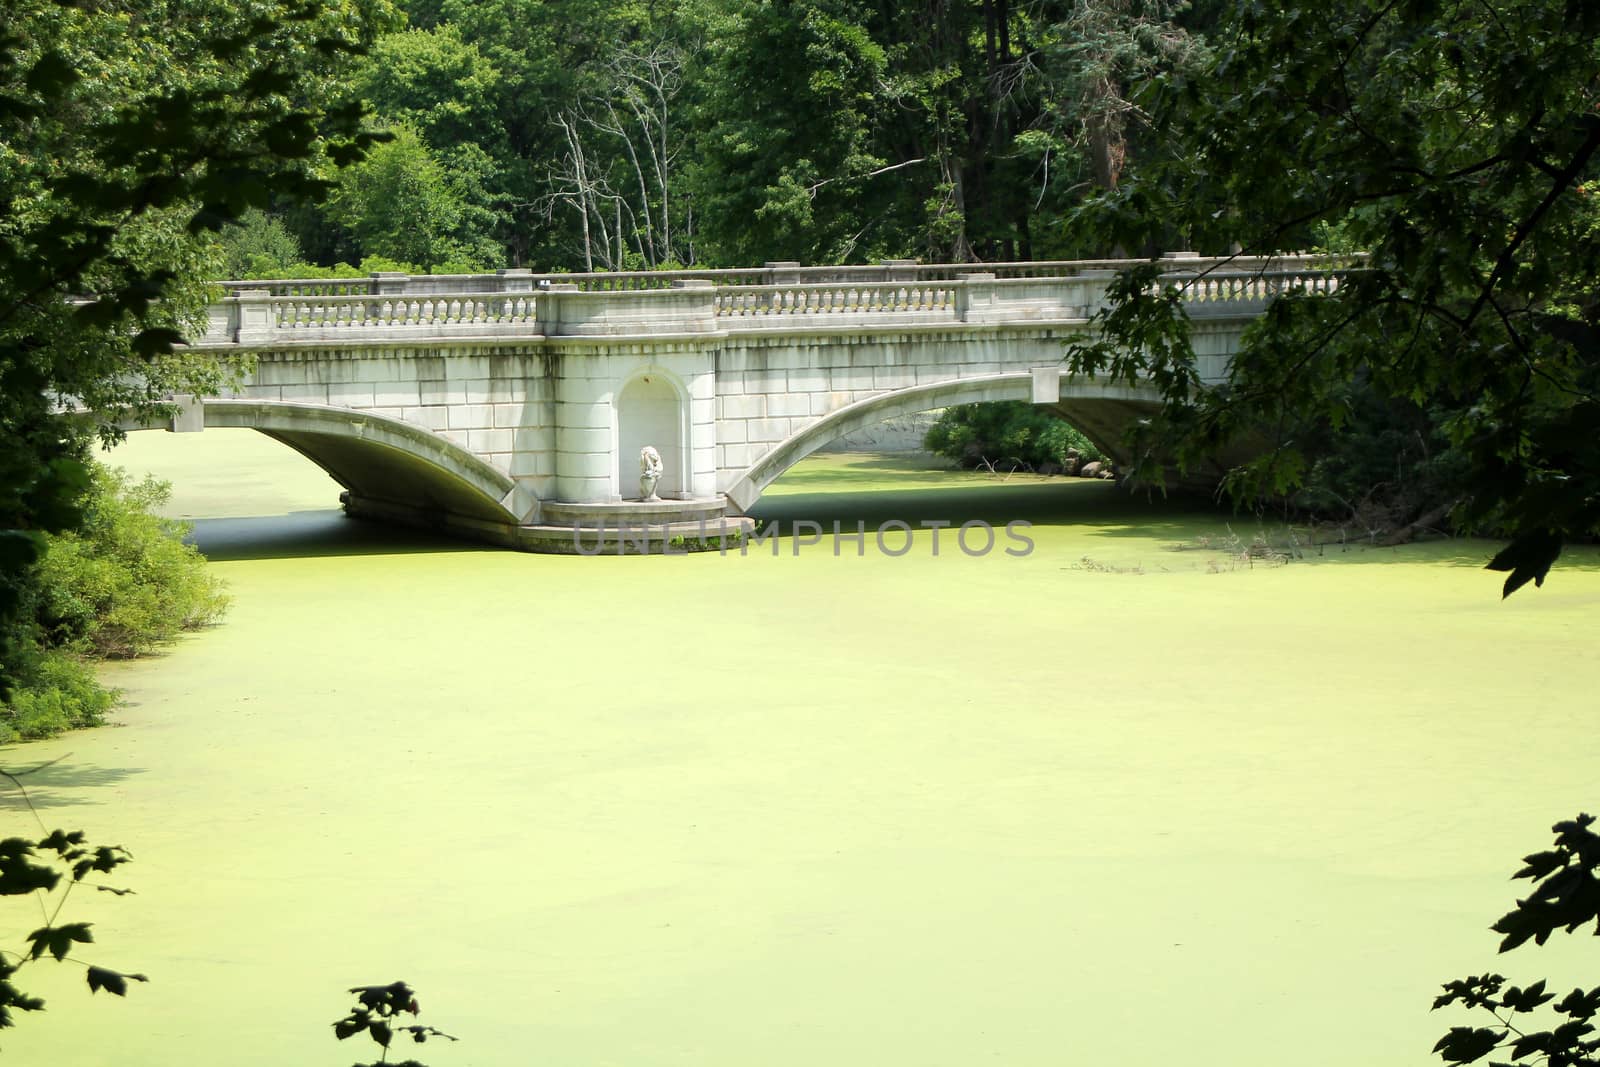 A bridge across a pond